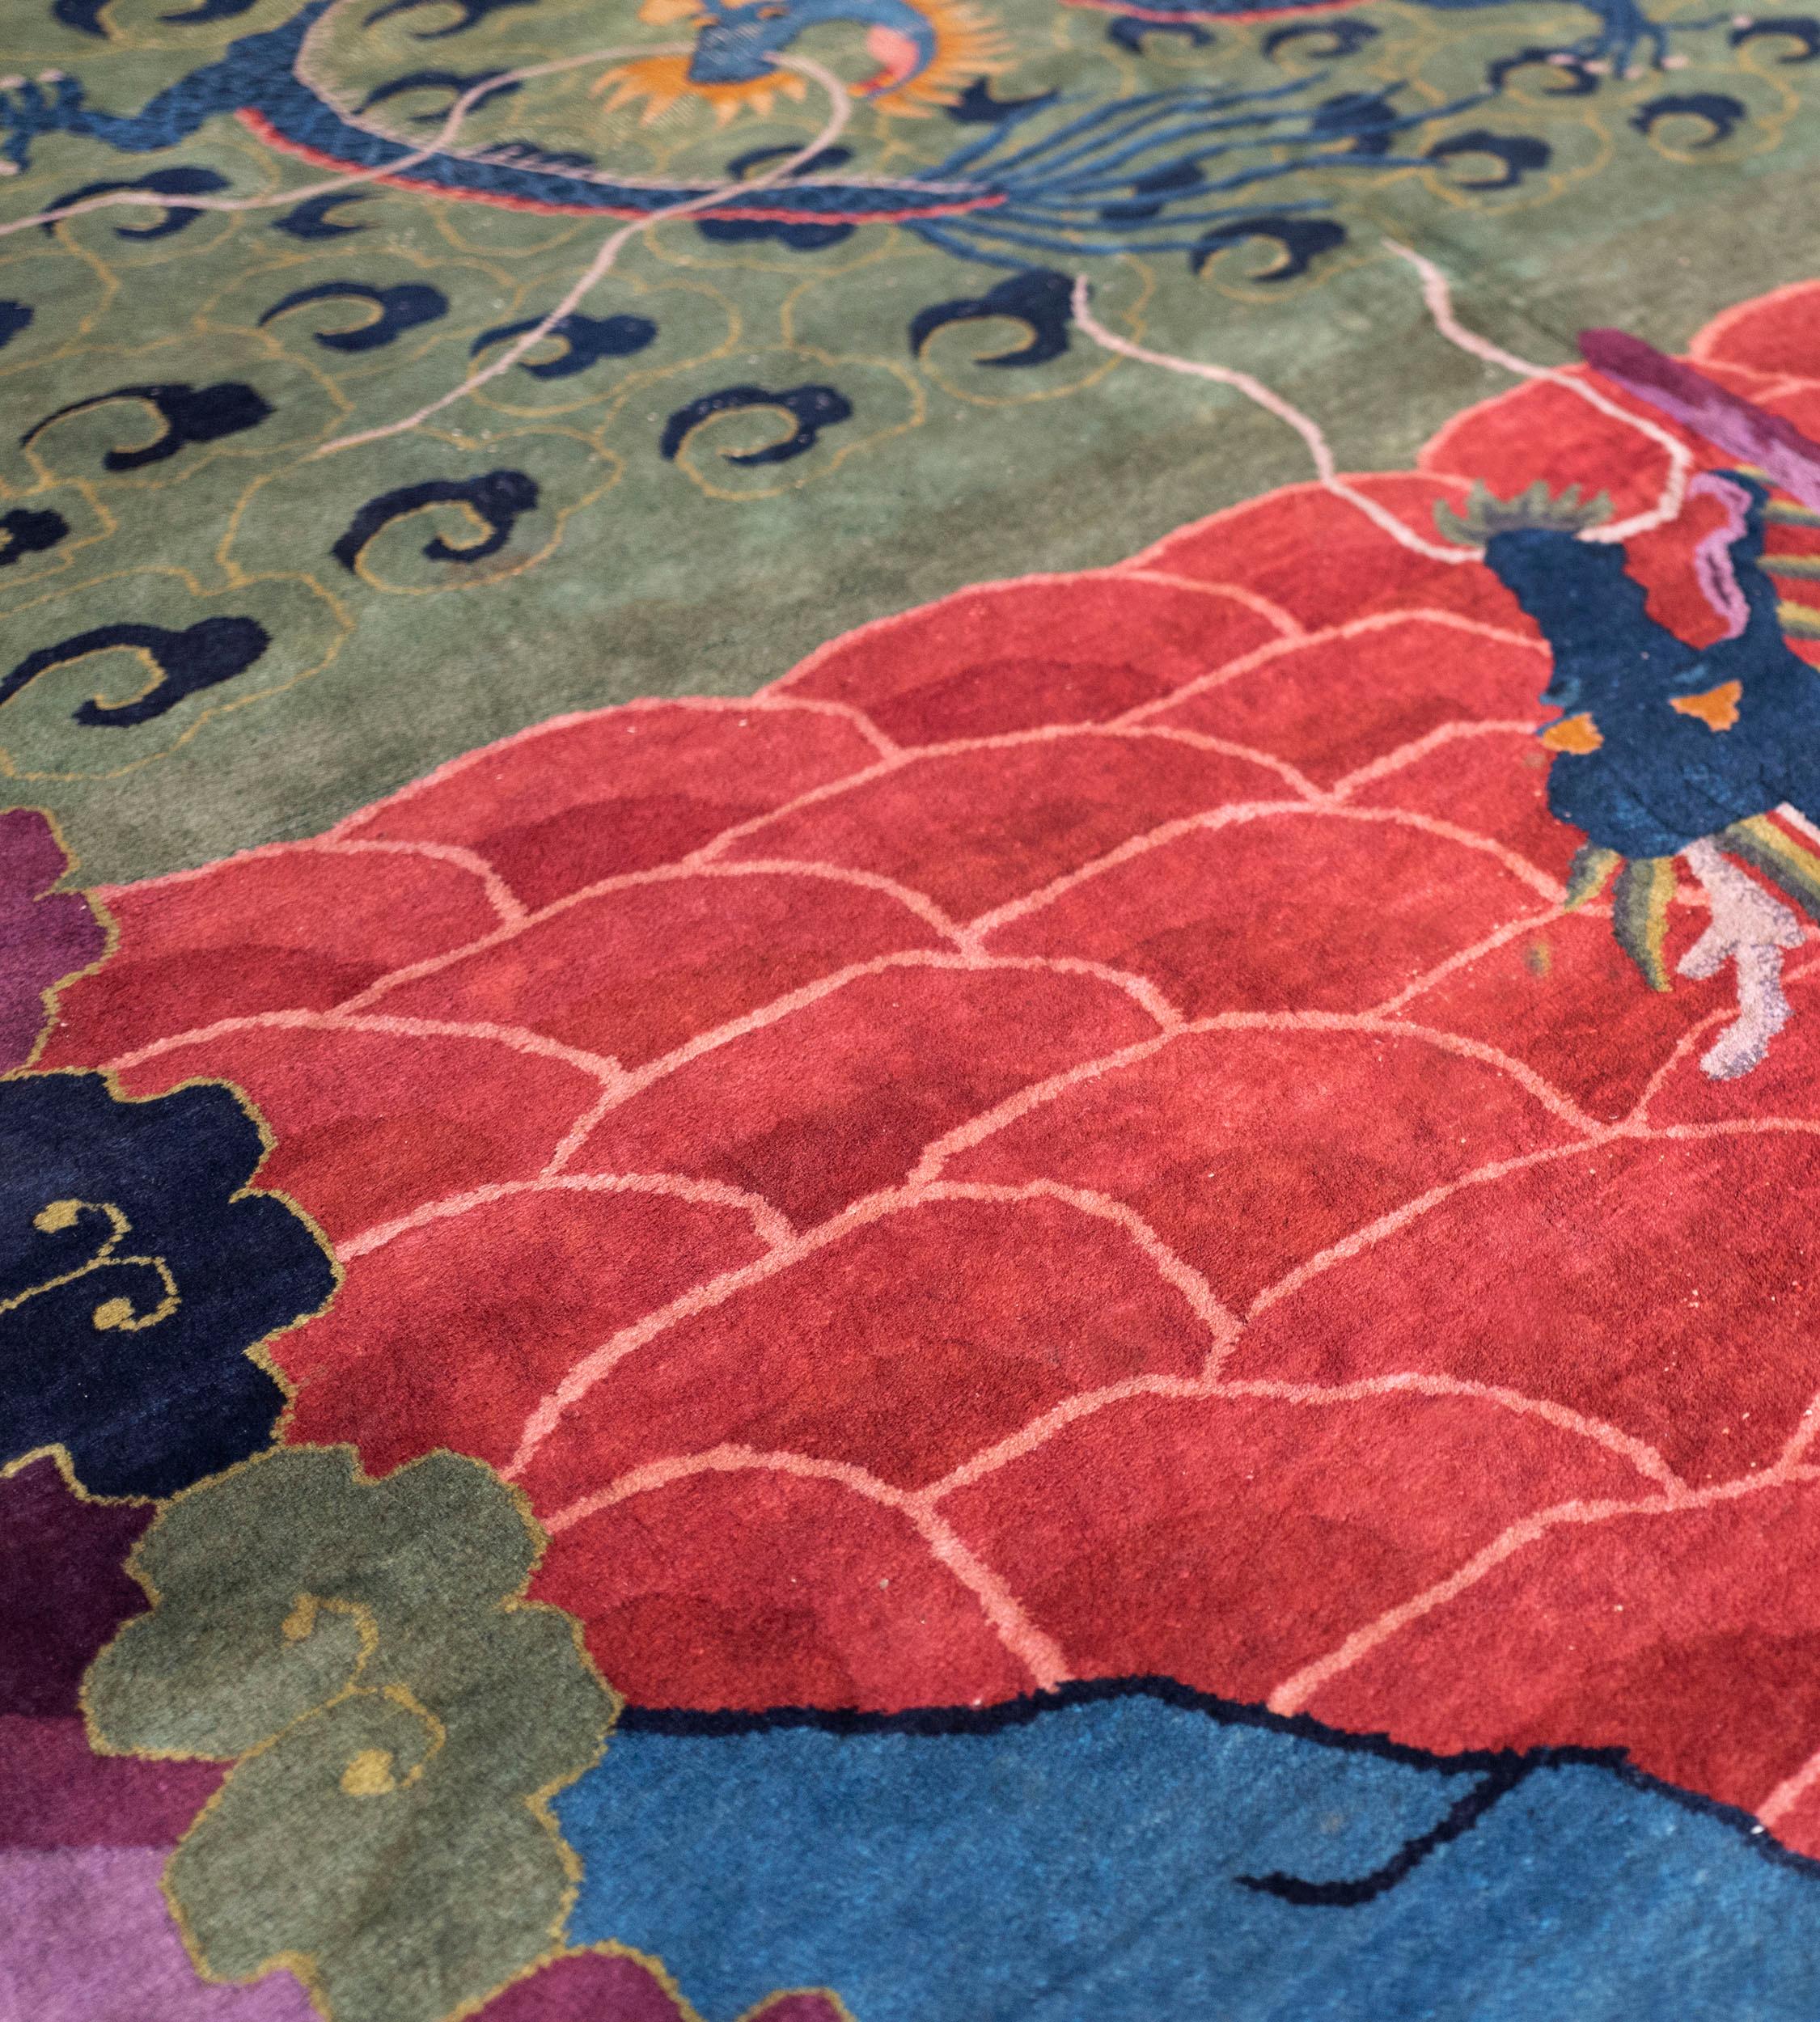 Dieser antike handgewebte chinesische Teppich hat ein Feld mit einem zentralen rechteckigen Paneel, der untere Teil mit einem leuchtend orange-roten, ineinandergreifenden Rautenmuster mit einer zentralen aubergine-lila Stange mit einem stilisierten